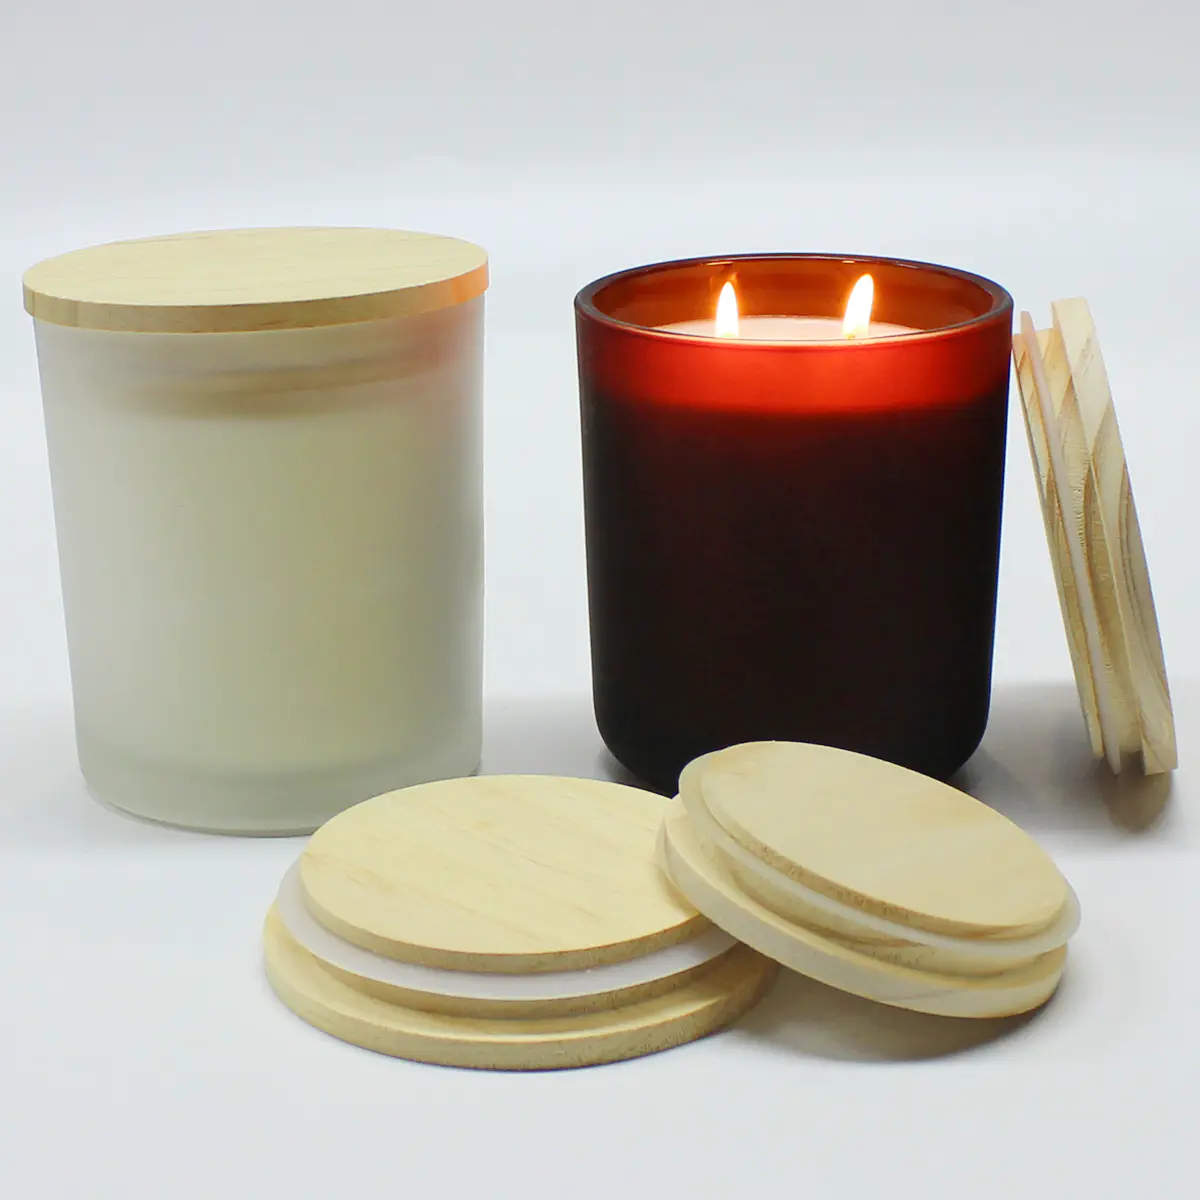 الجملة مخصص جولة شكل أغطية خشبية مع حجم مختلف لجرار شمعة